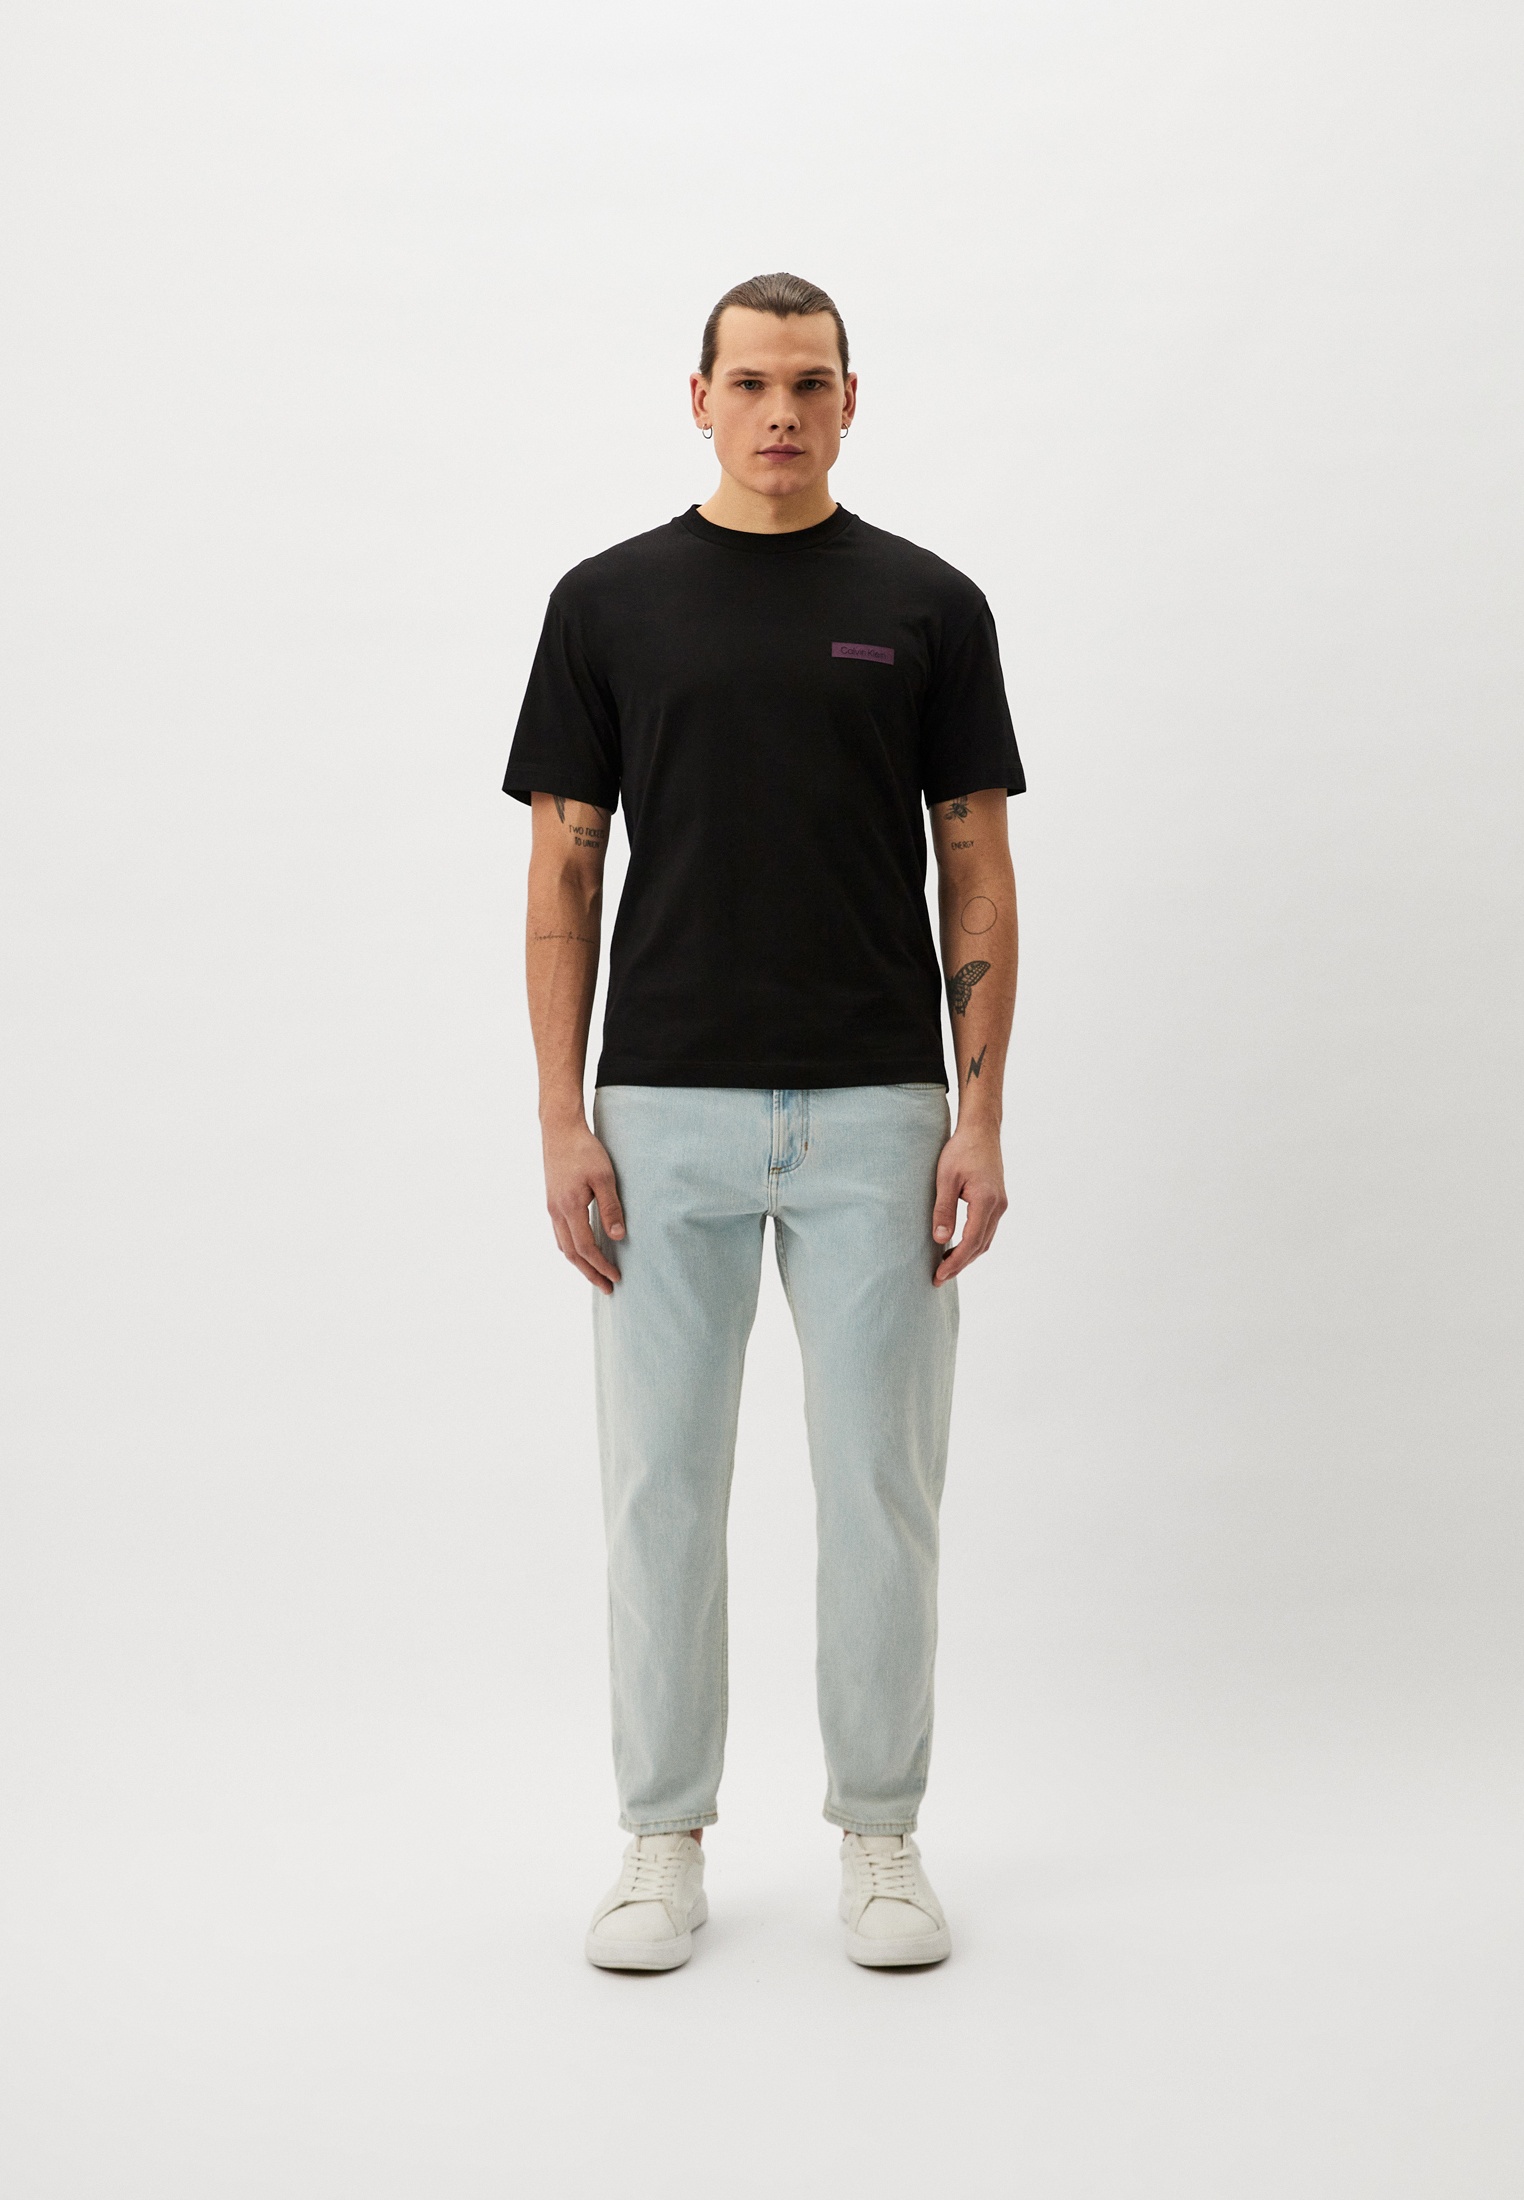 Мужская футболка Calvin Klein (Кельвин Кляйн) K10K111842: изображение 2